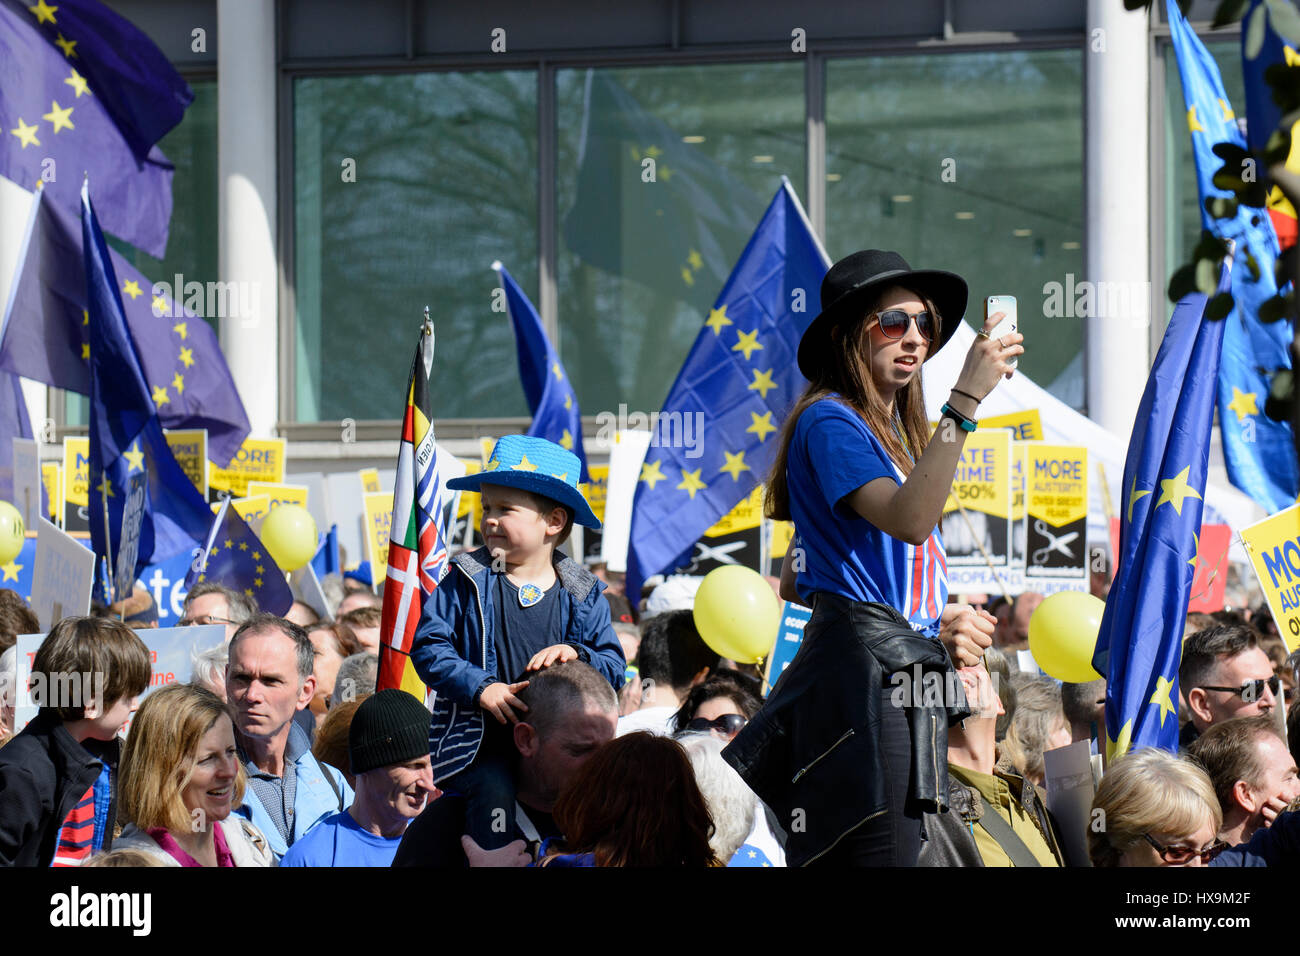 Londres, Reino Unido. El 25 de marzo de 2017. Miles de manifestantes asistir a Marzo para Europa, marchando por el centro de Londres para protestar contra Brexit durante el 60º aniversario de la UE, justo antes de la Teresa puede dispara el artículo 50. Crédito: ZEN - Zaneta Razaite/Alamy Live News Foto de stock